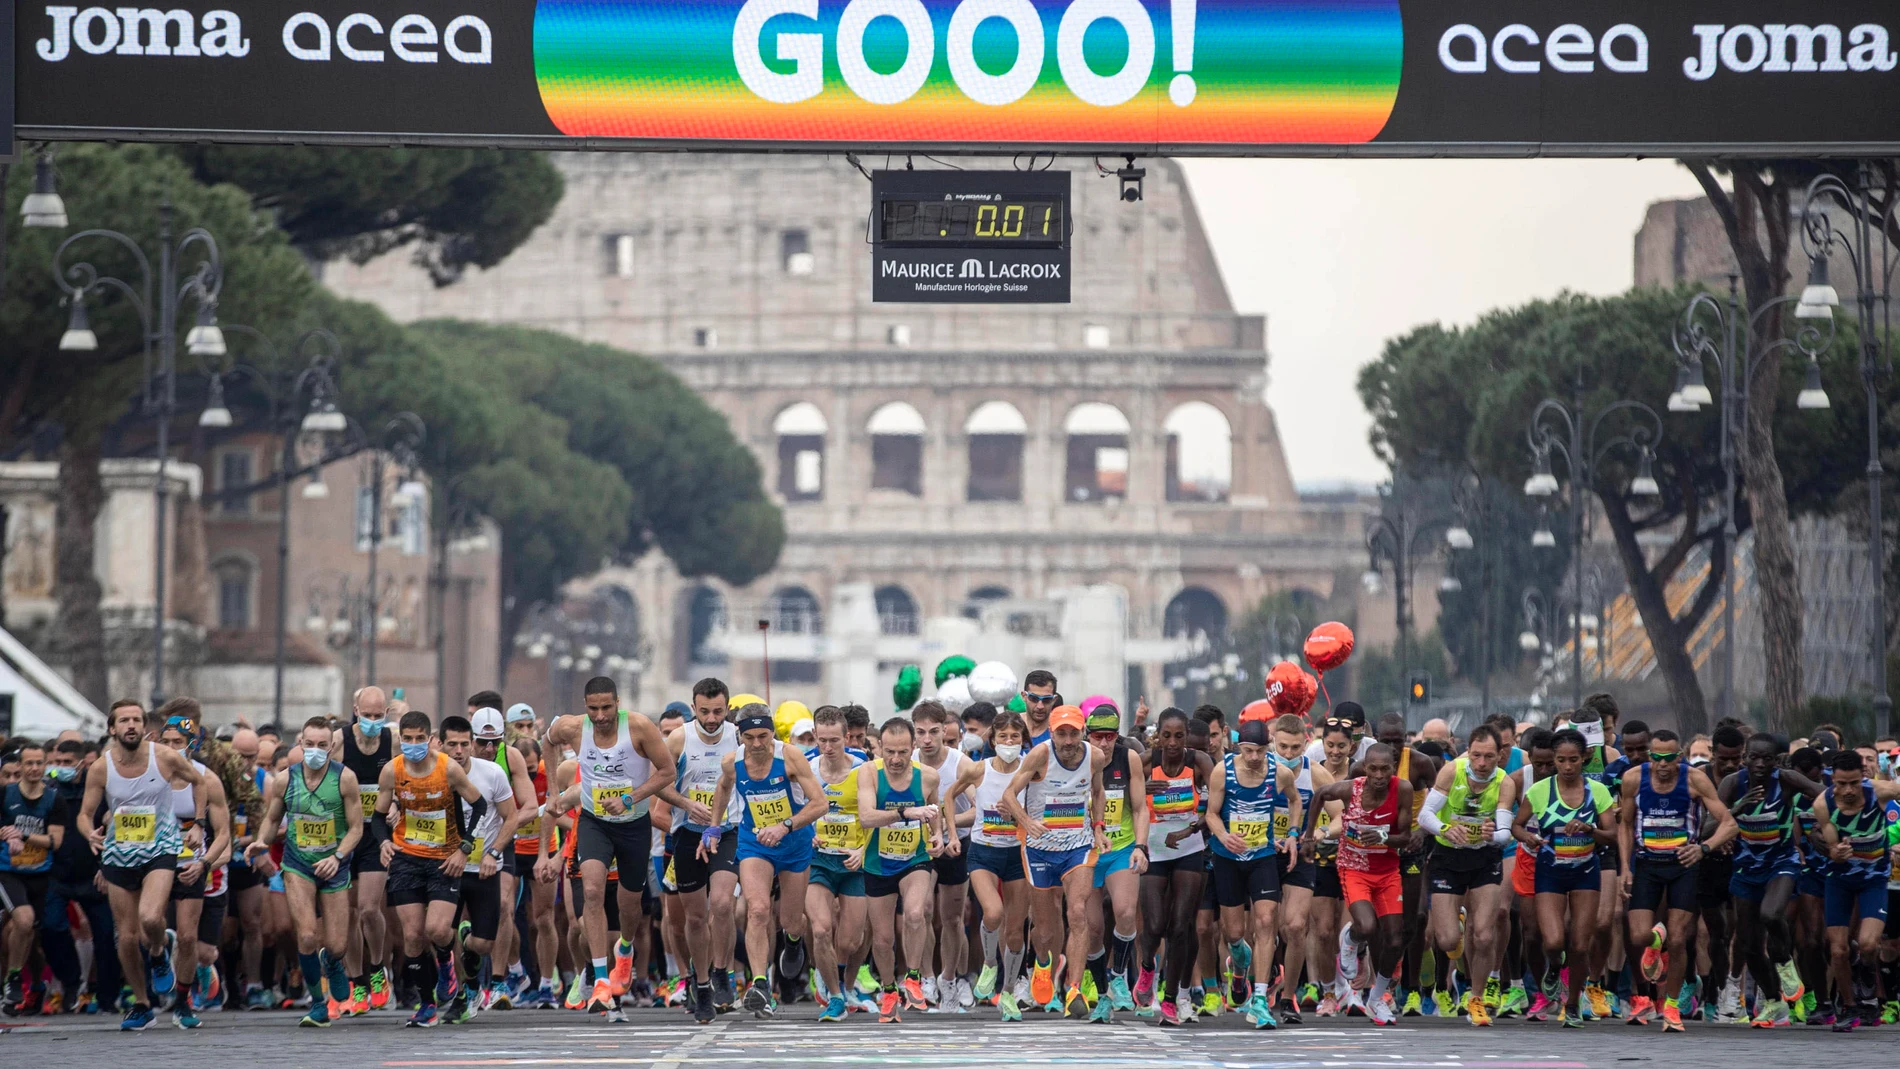 Numerosas ciudades de Europa han acogido maratones este domingo. En la imagen, Roma